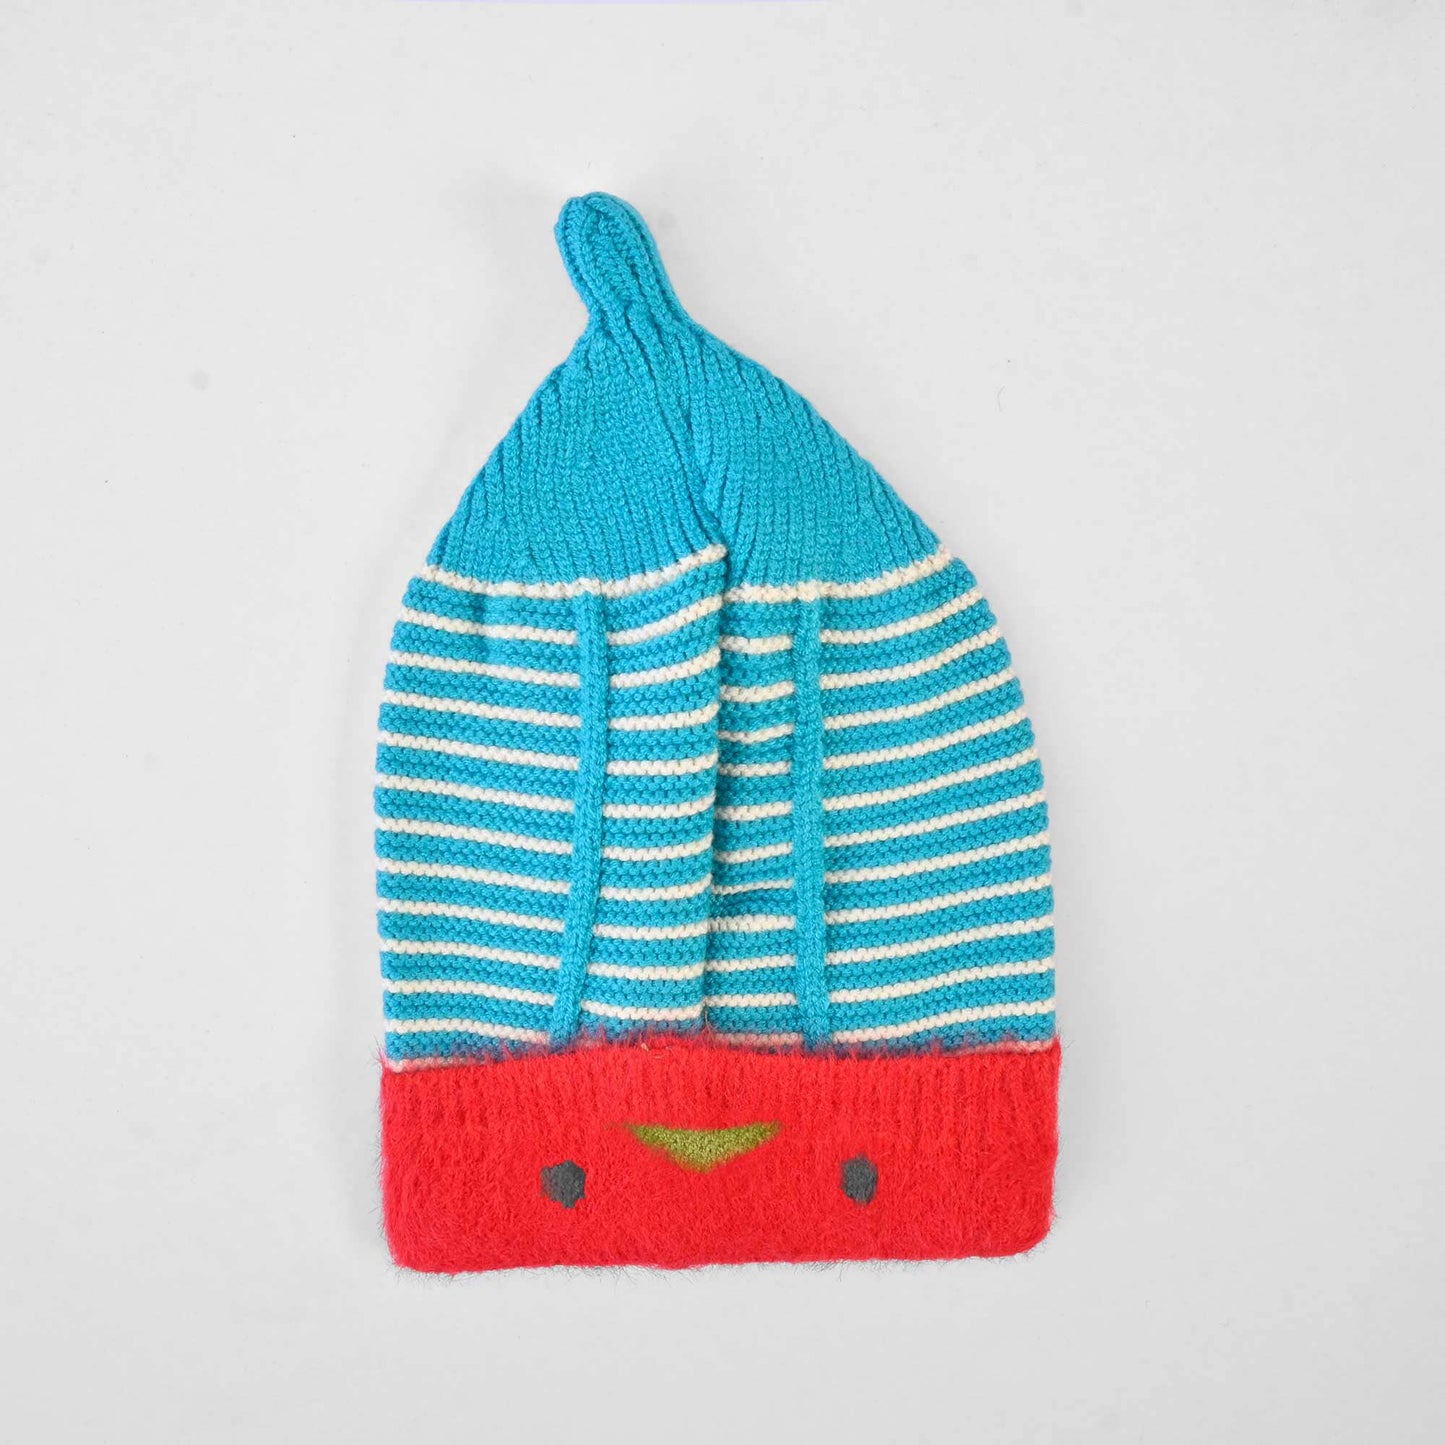 Kid's Contrast Lining Winter Knitted Beanie Cap Headwear SRL D4 